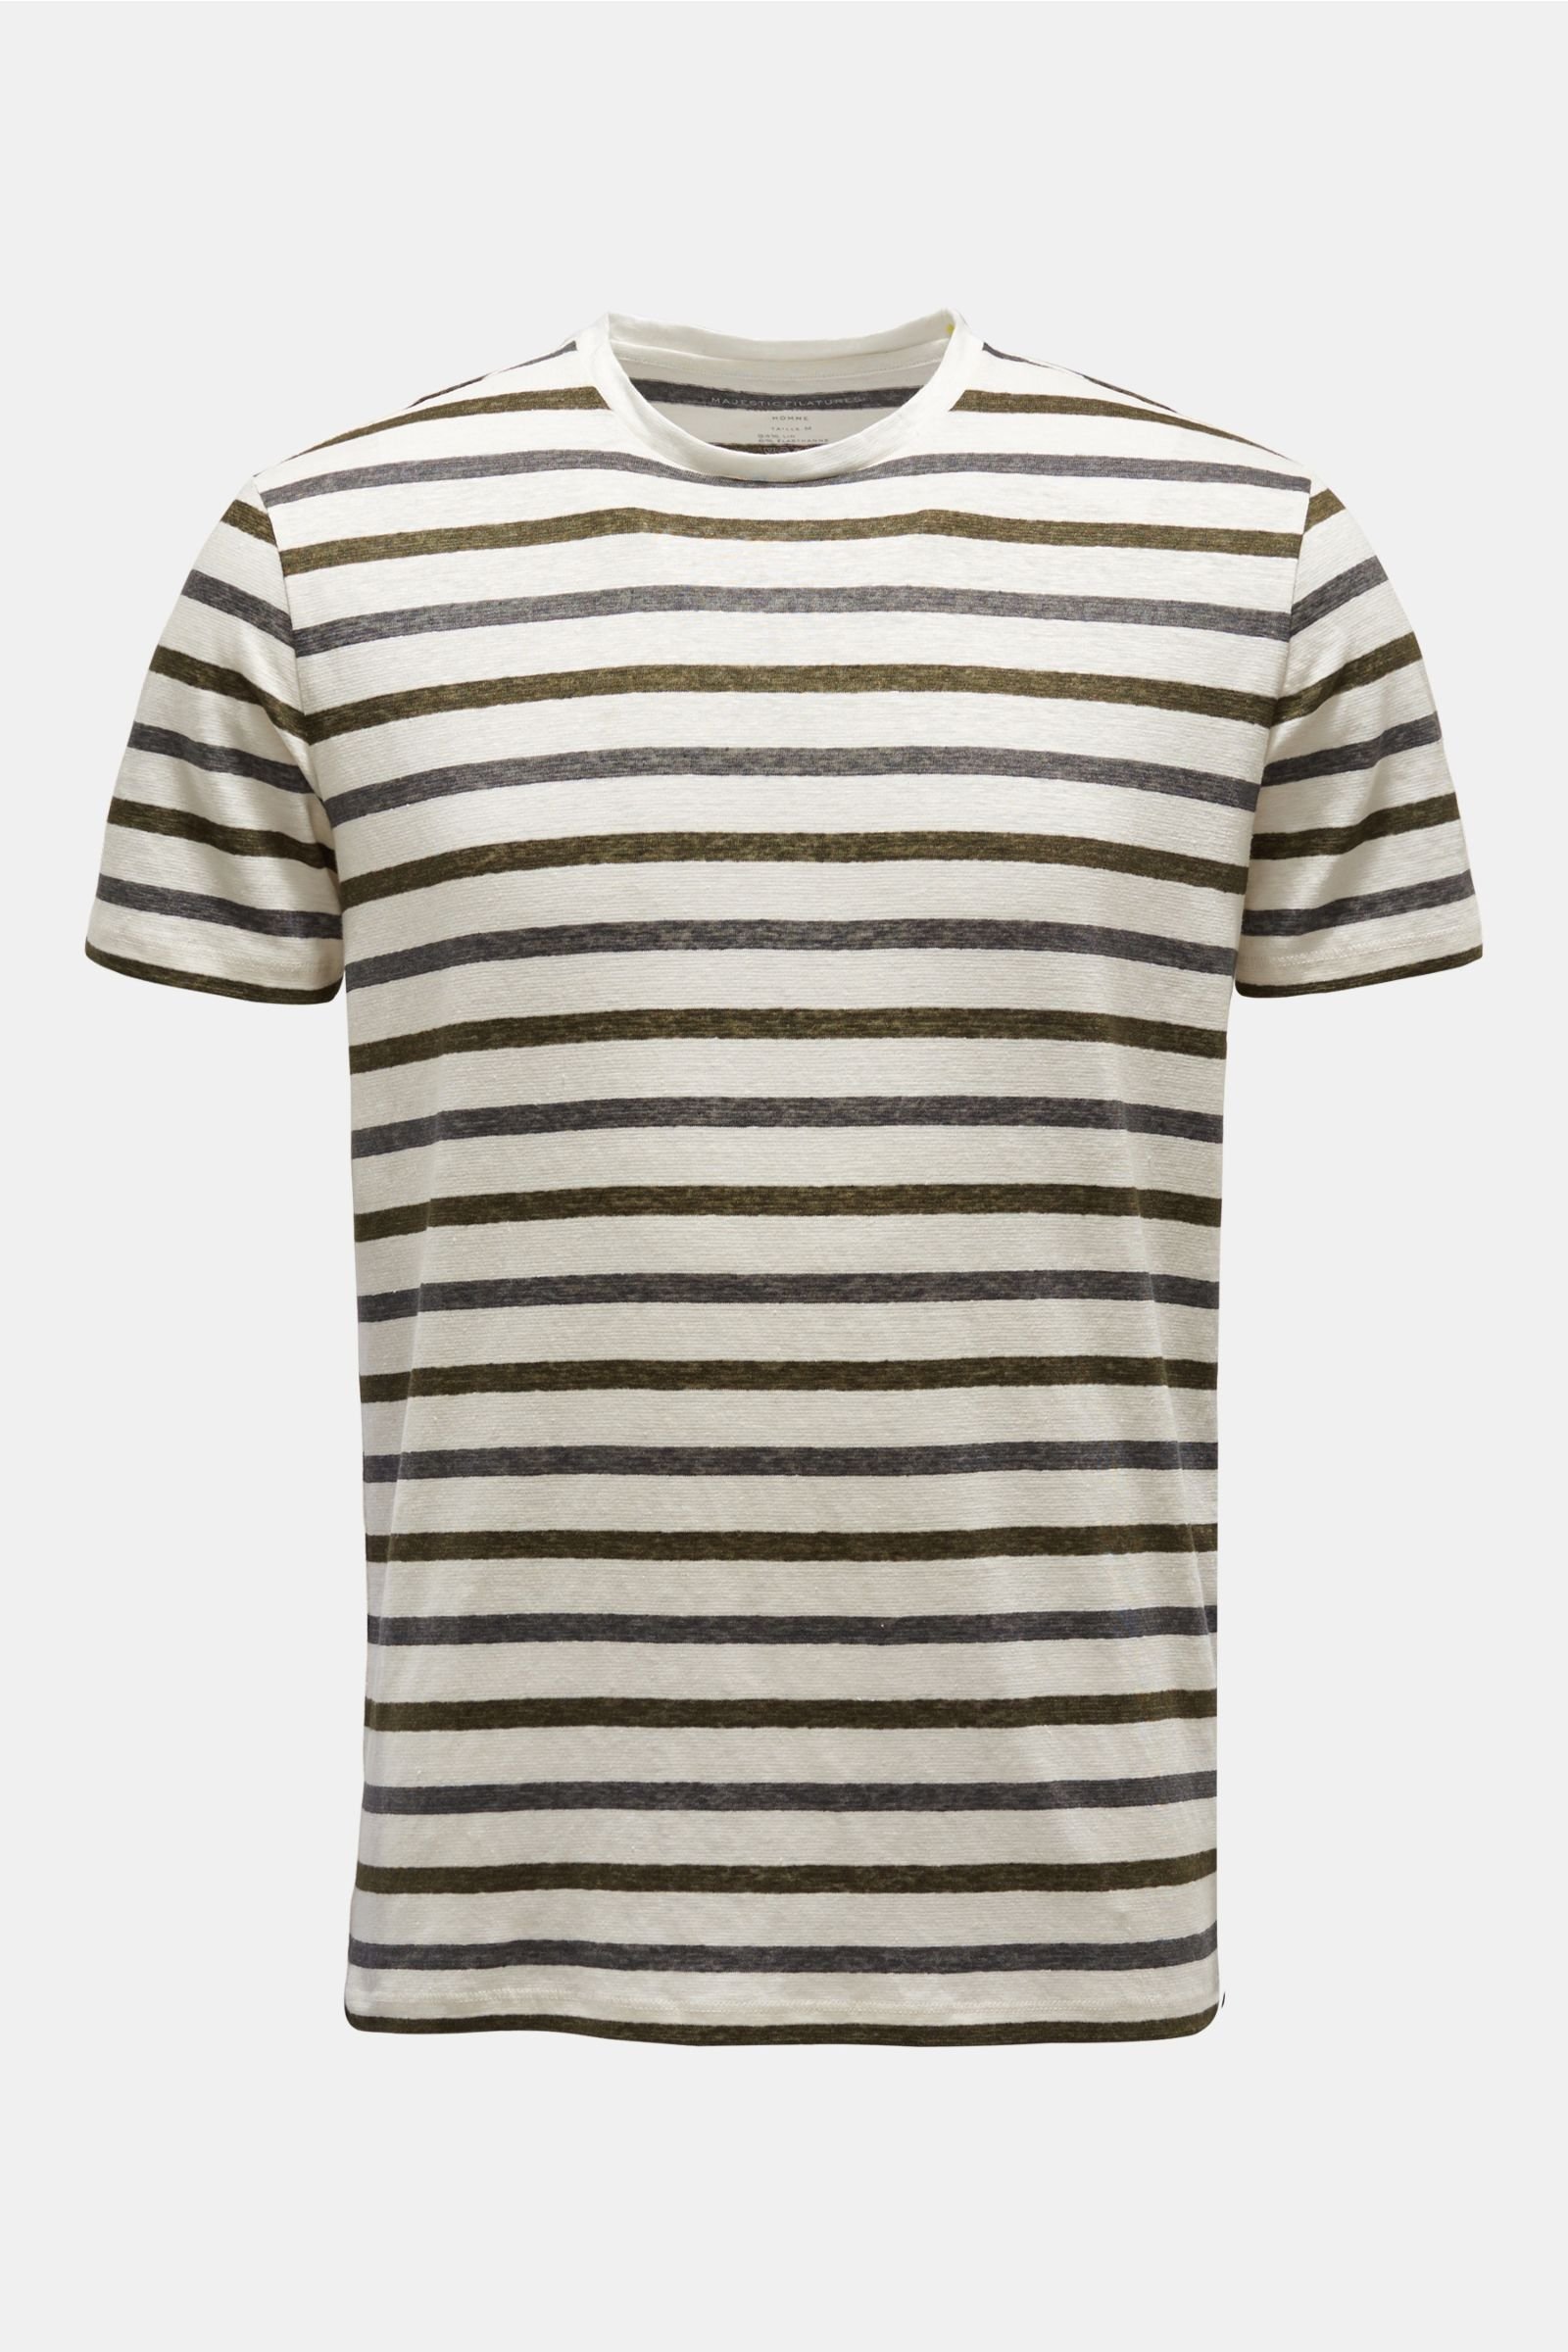 Leinen R-Neck T-Shirt dunkelgrau/oliv gestreift